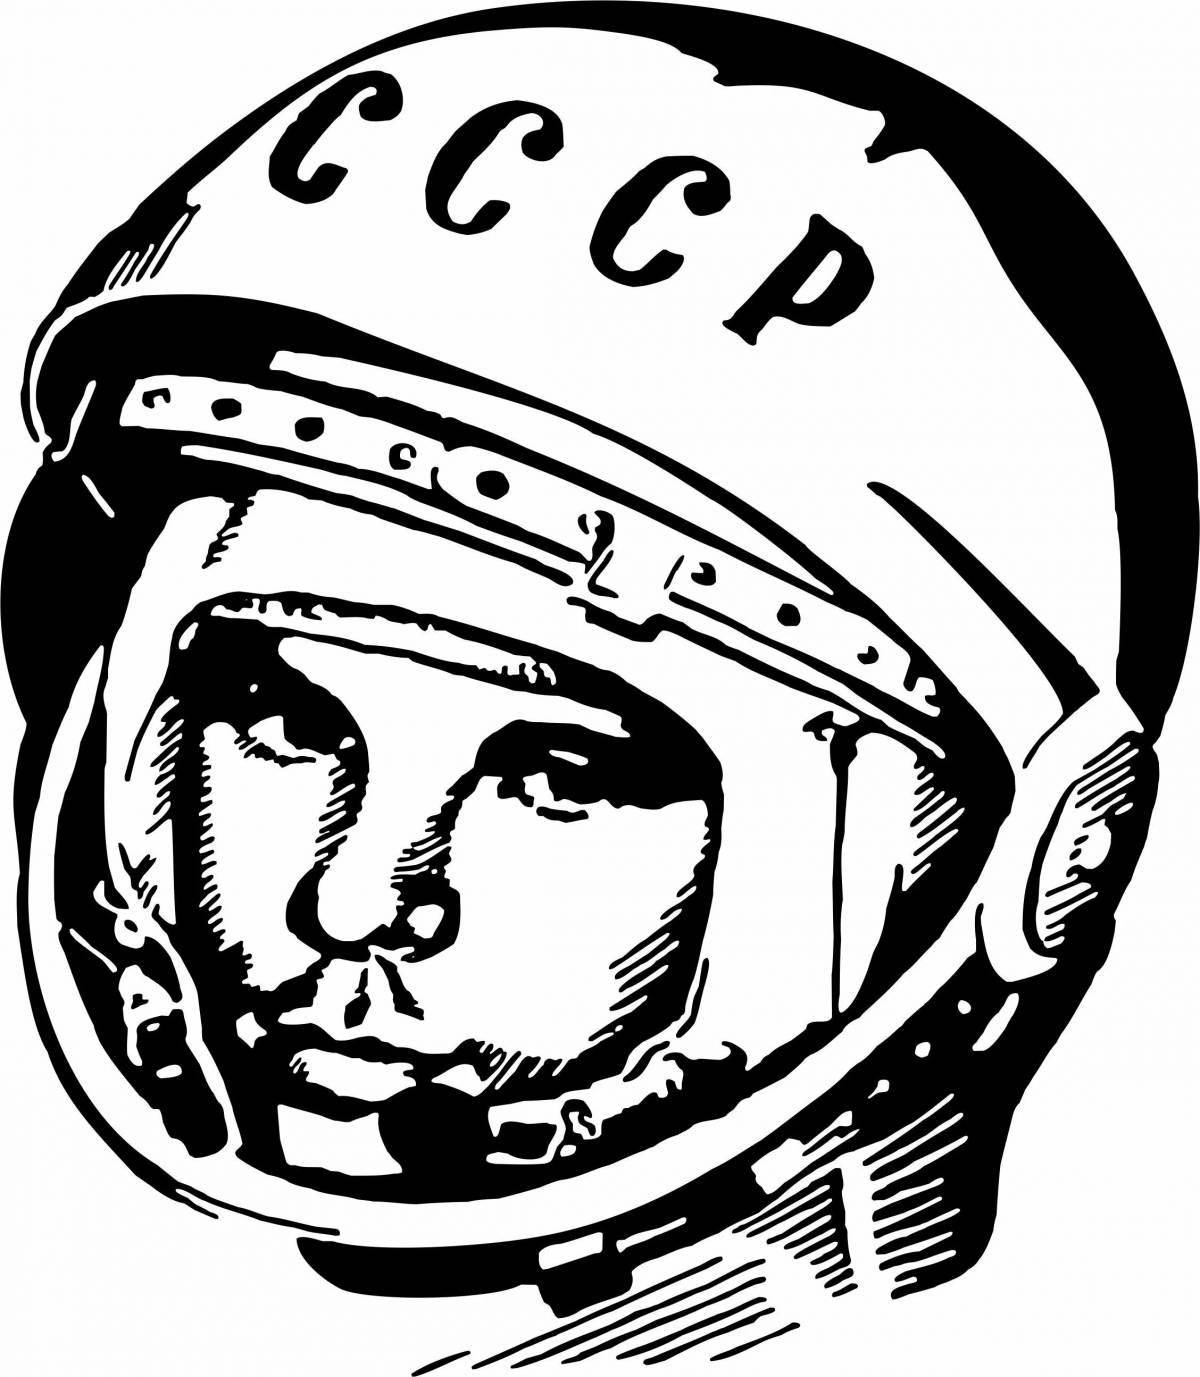 Yuri Gagarin's funny coloring book